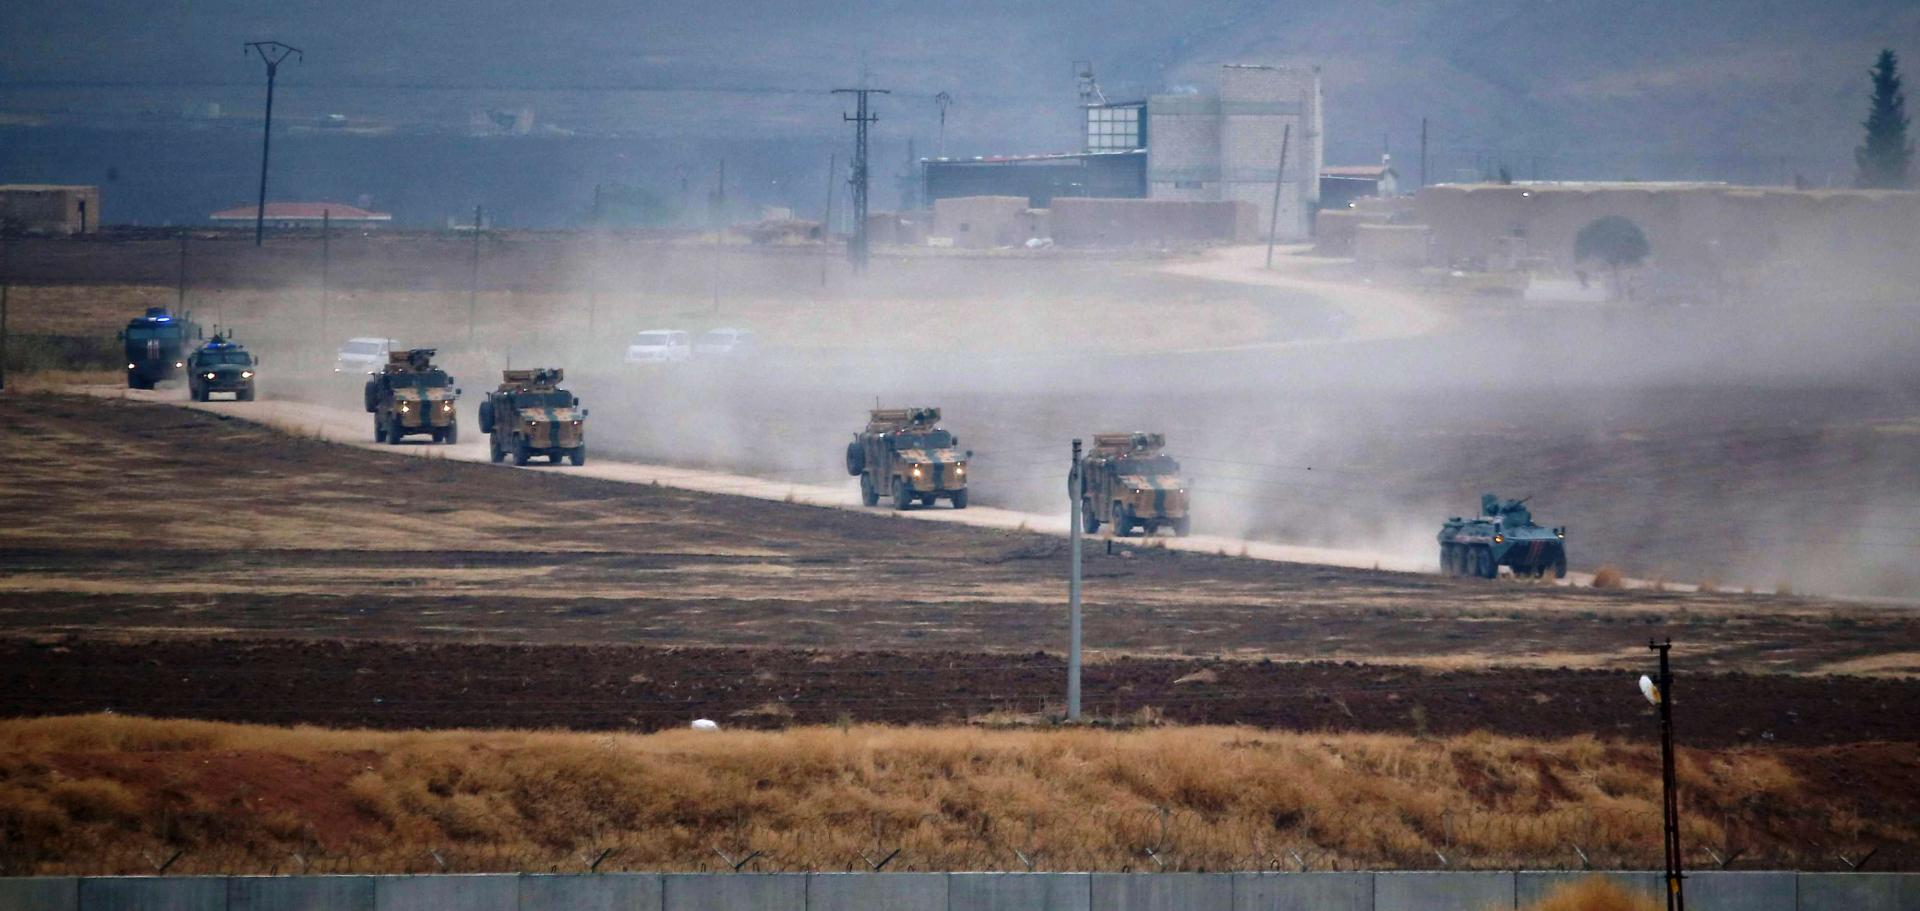 تركيا تبرر توقف دورياتها مع روسيا بحالة الطقس وليس الهجمات في إدلب